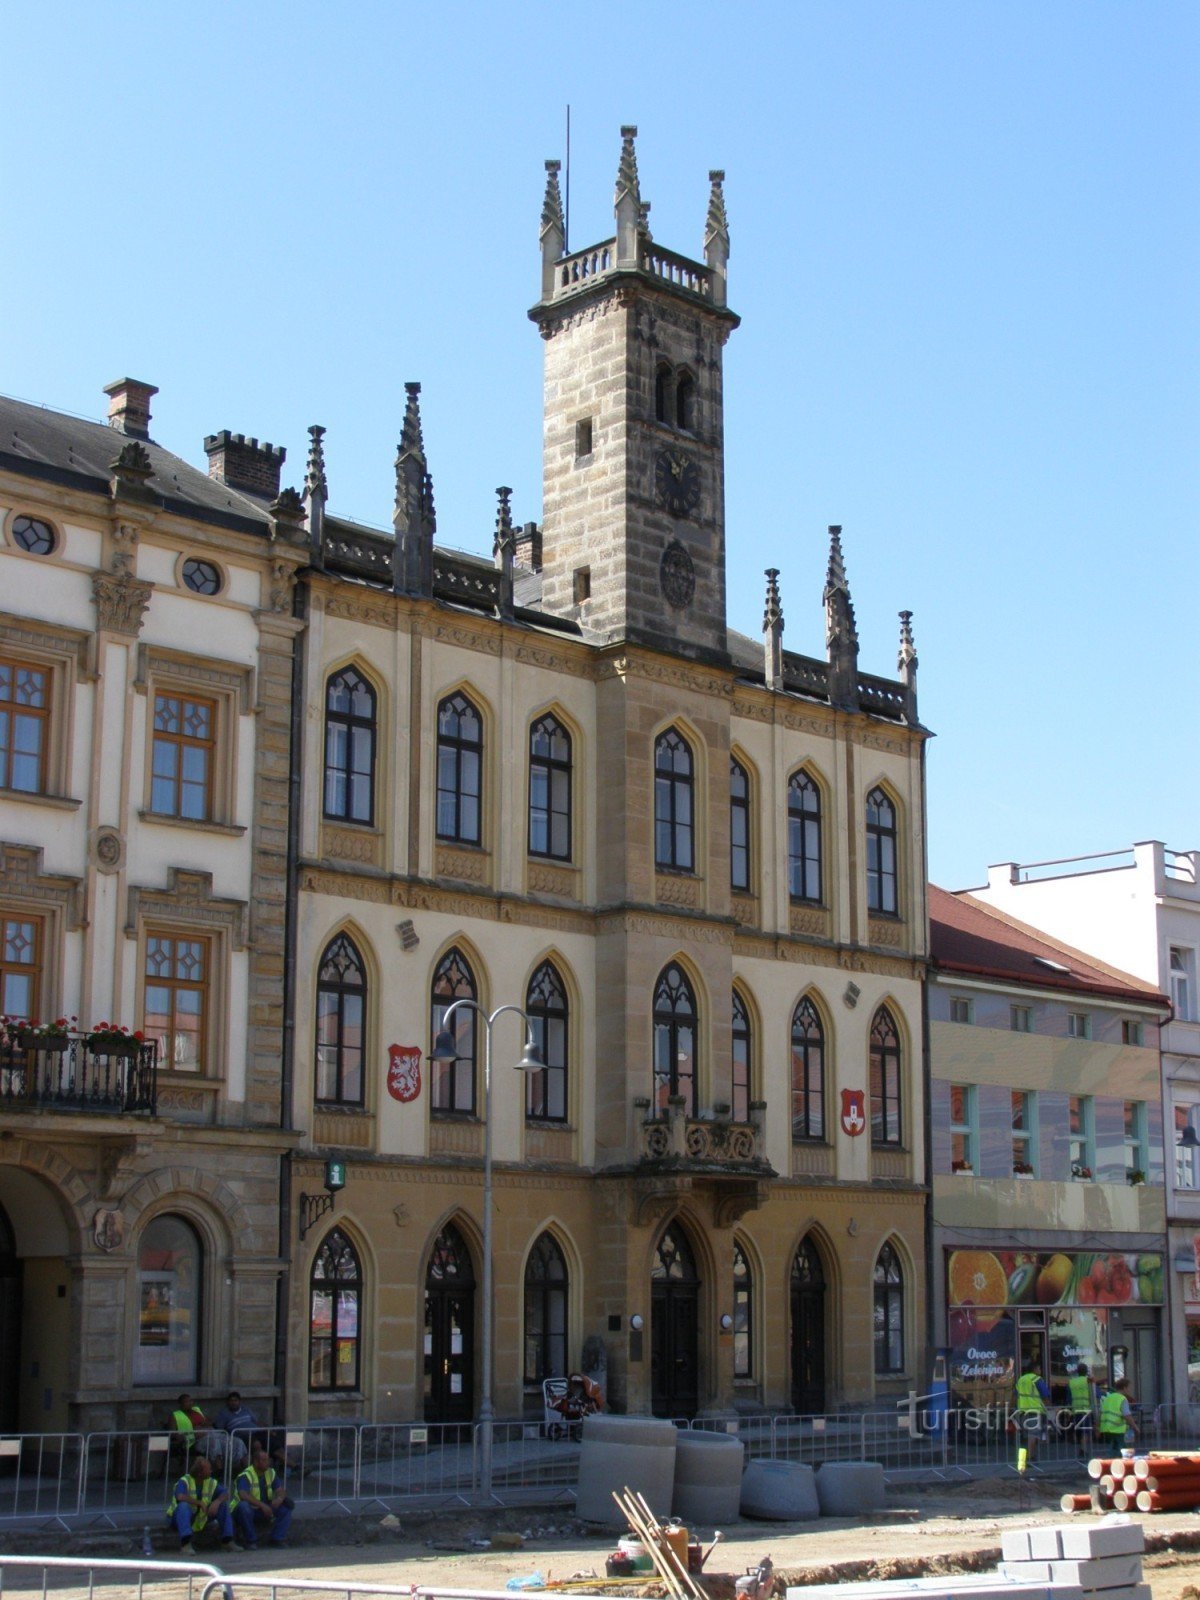 Hořice - Câmara municipal neogótica